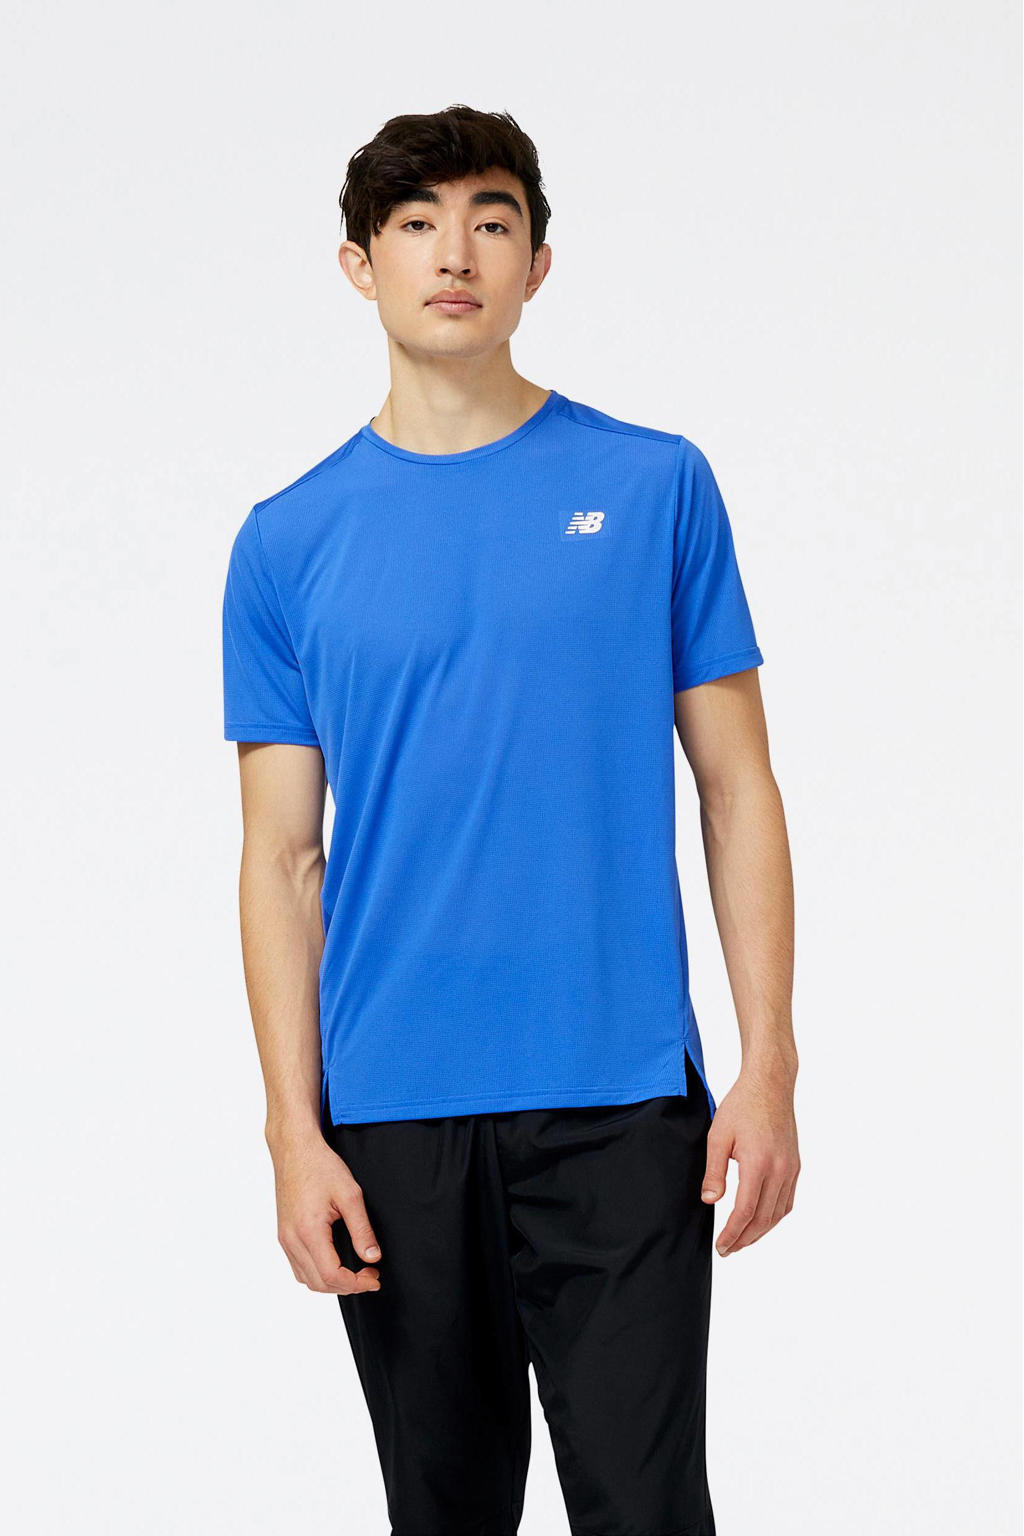 Blauwe heren New Balance hardloopshirt Accelerate van polyester met korte mouwen en ronde hals